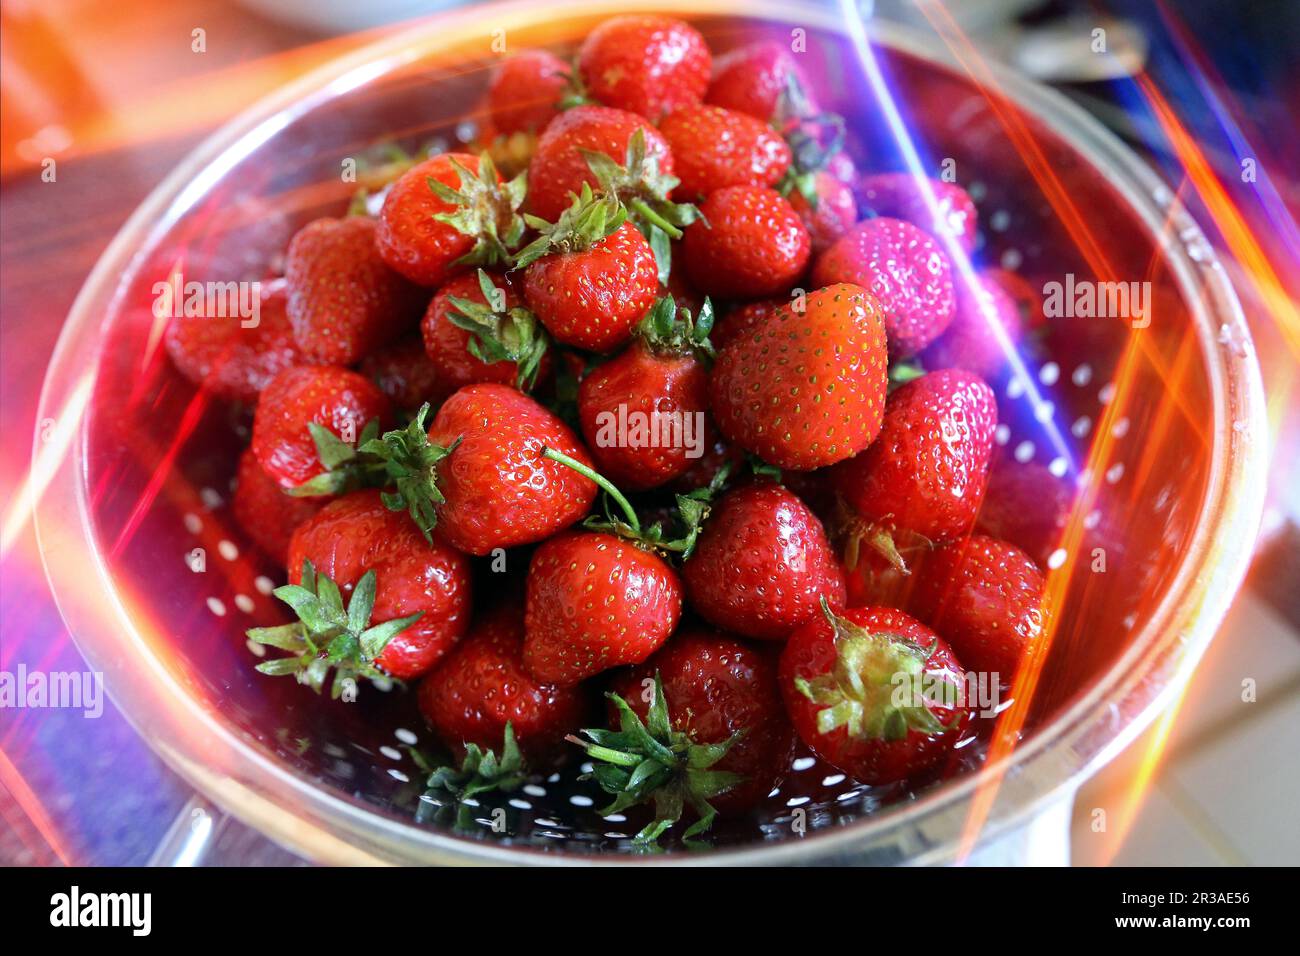 Erdbeeren mit Lichtreflexen Stockfoto